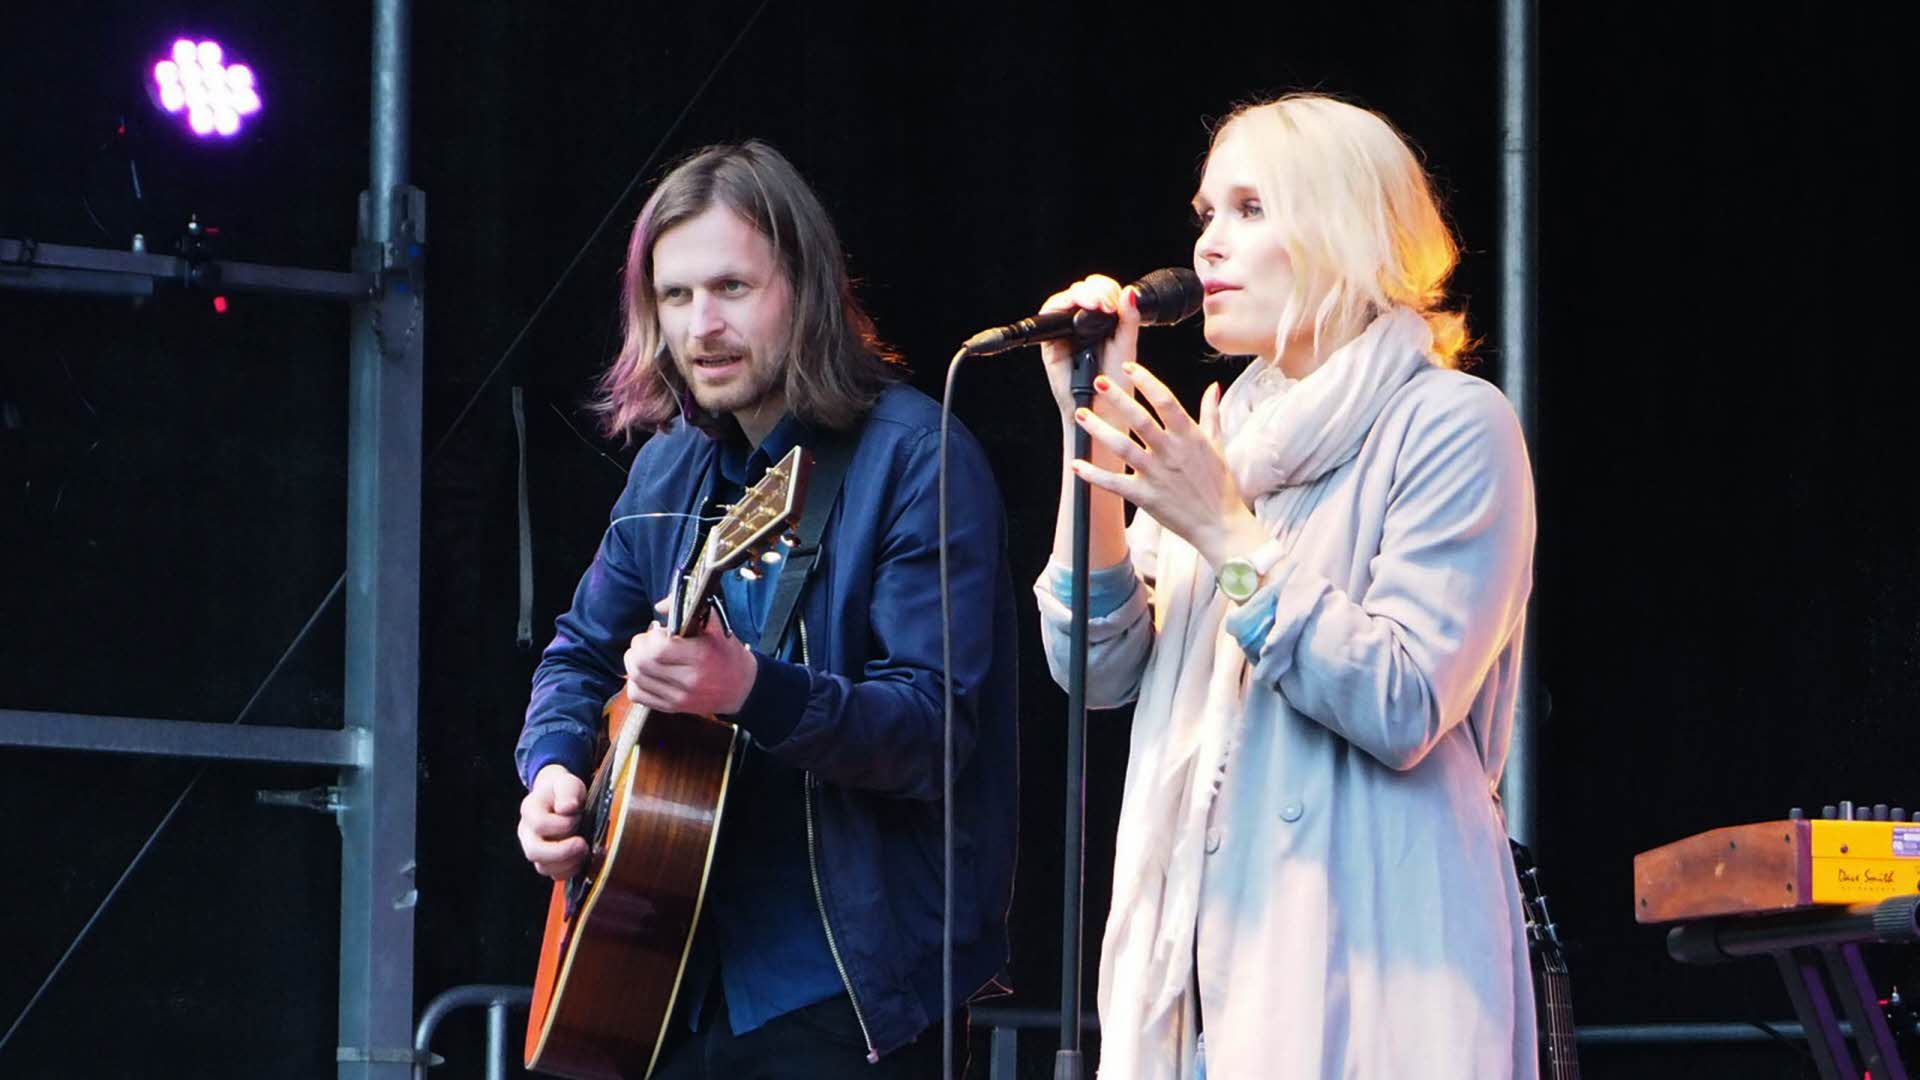 Una mujer rubia cantando con un micrófono y un hombre con melena tocando la guitarra en un escenario.